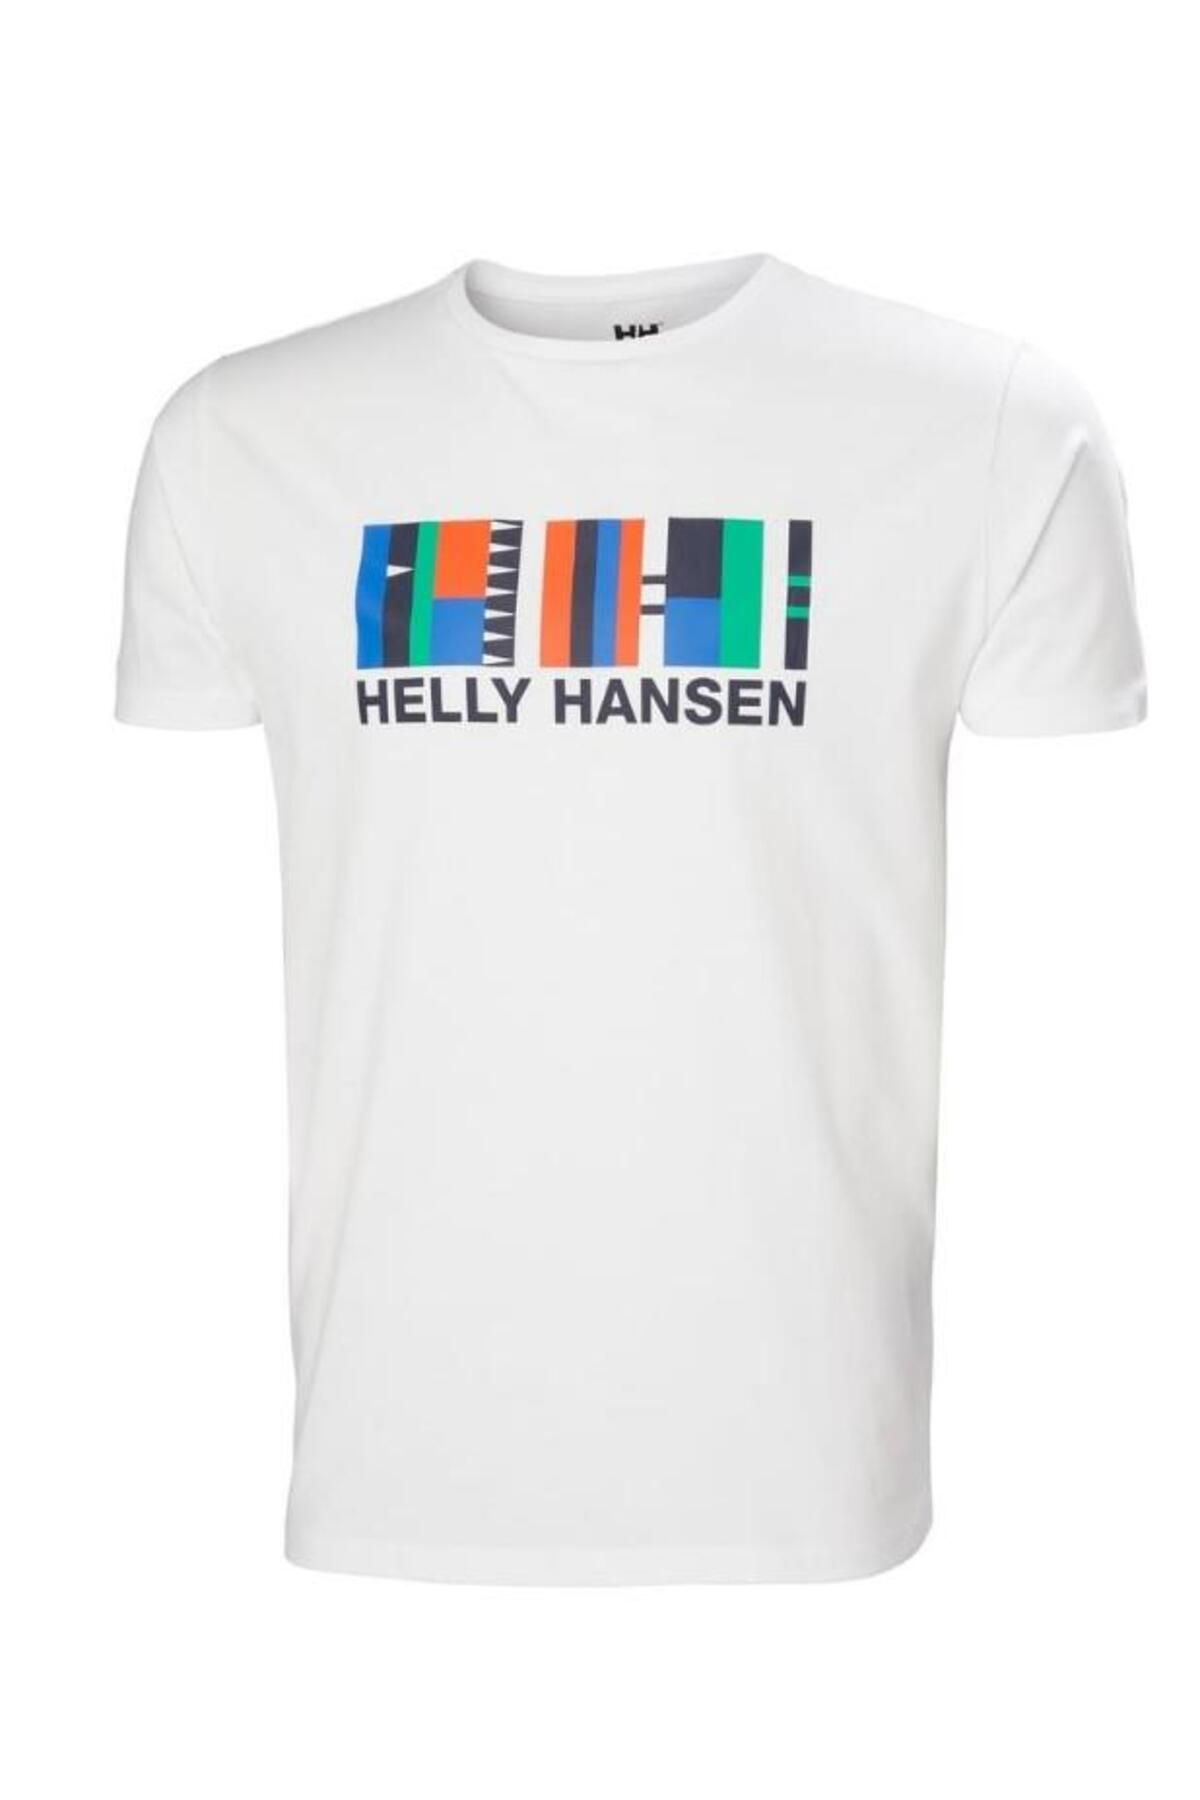 Helly Hansen SHORELINE T-SHIRT 2.0